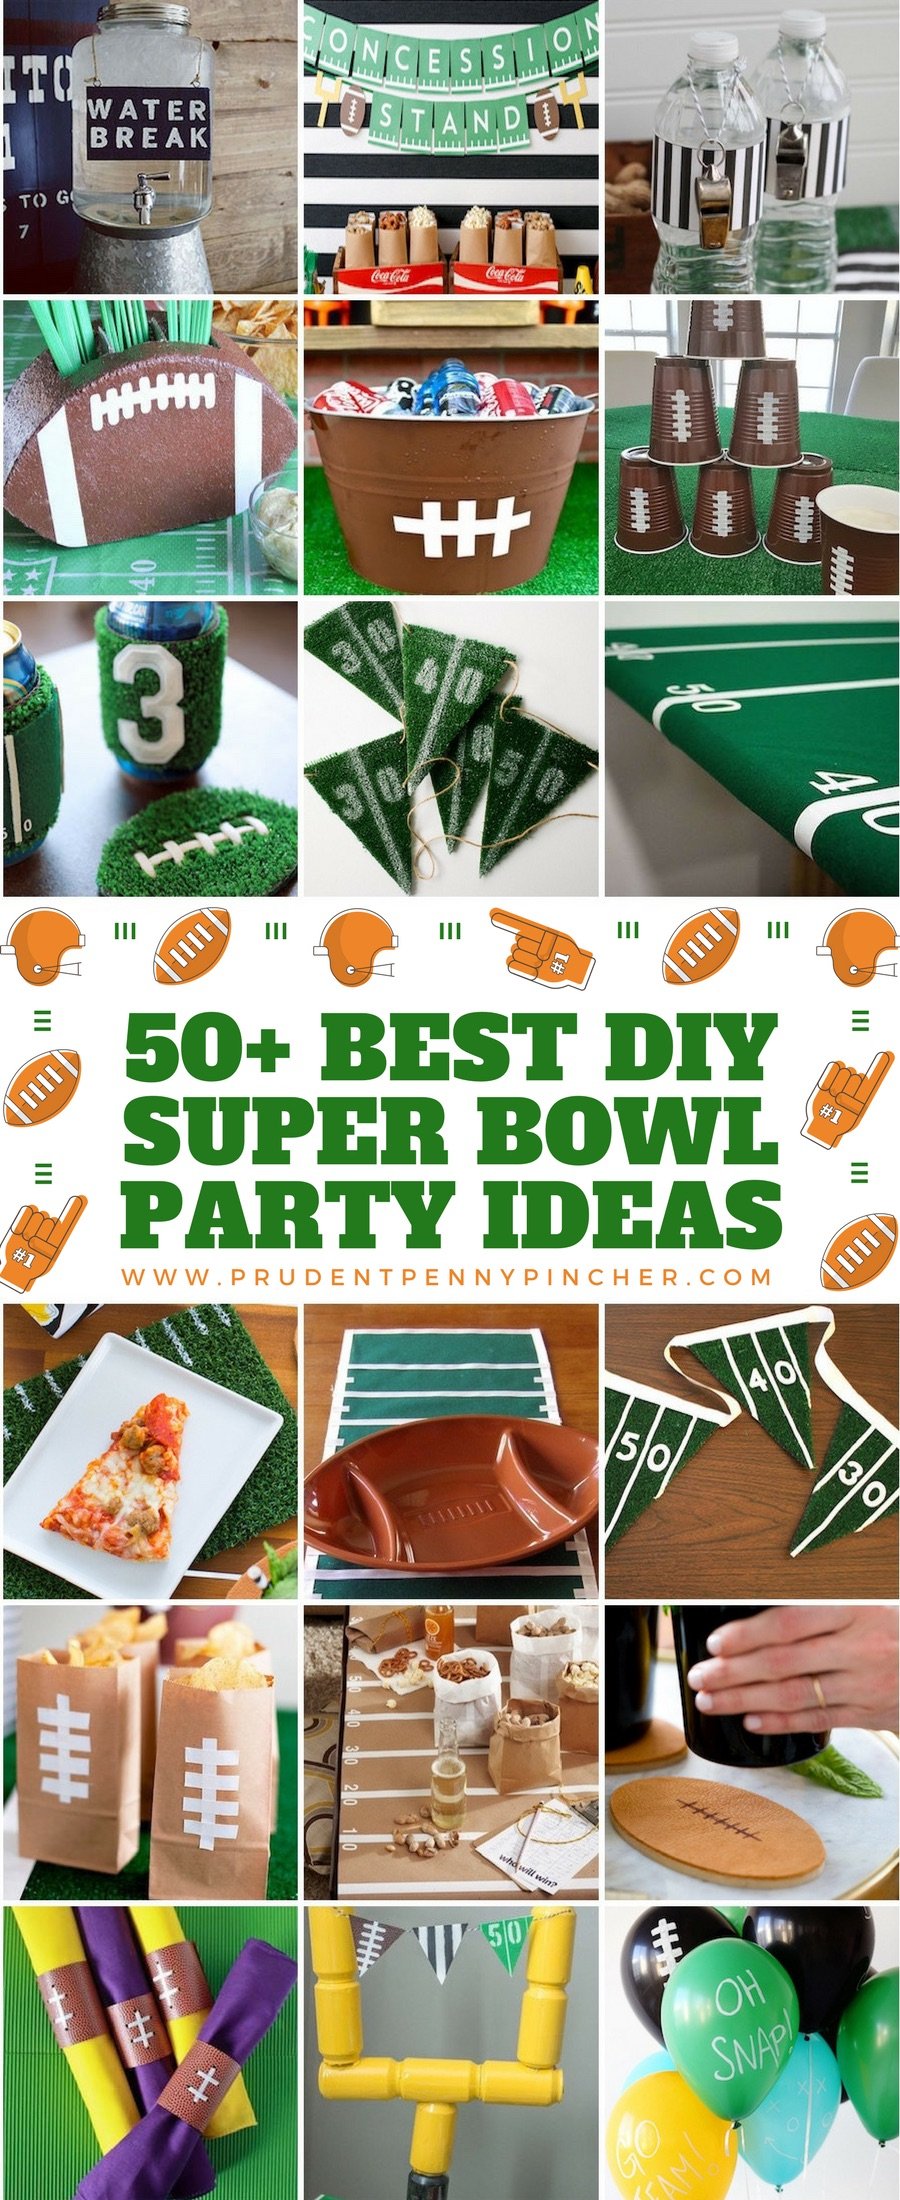 Super Bowl party ideas